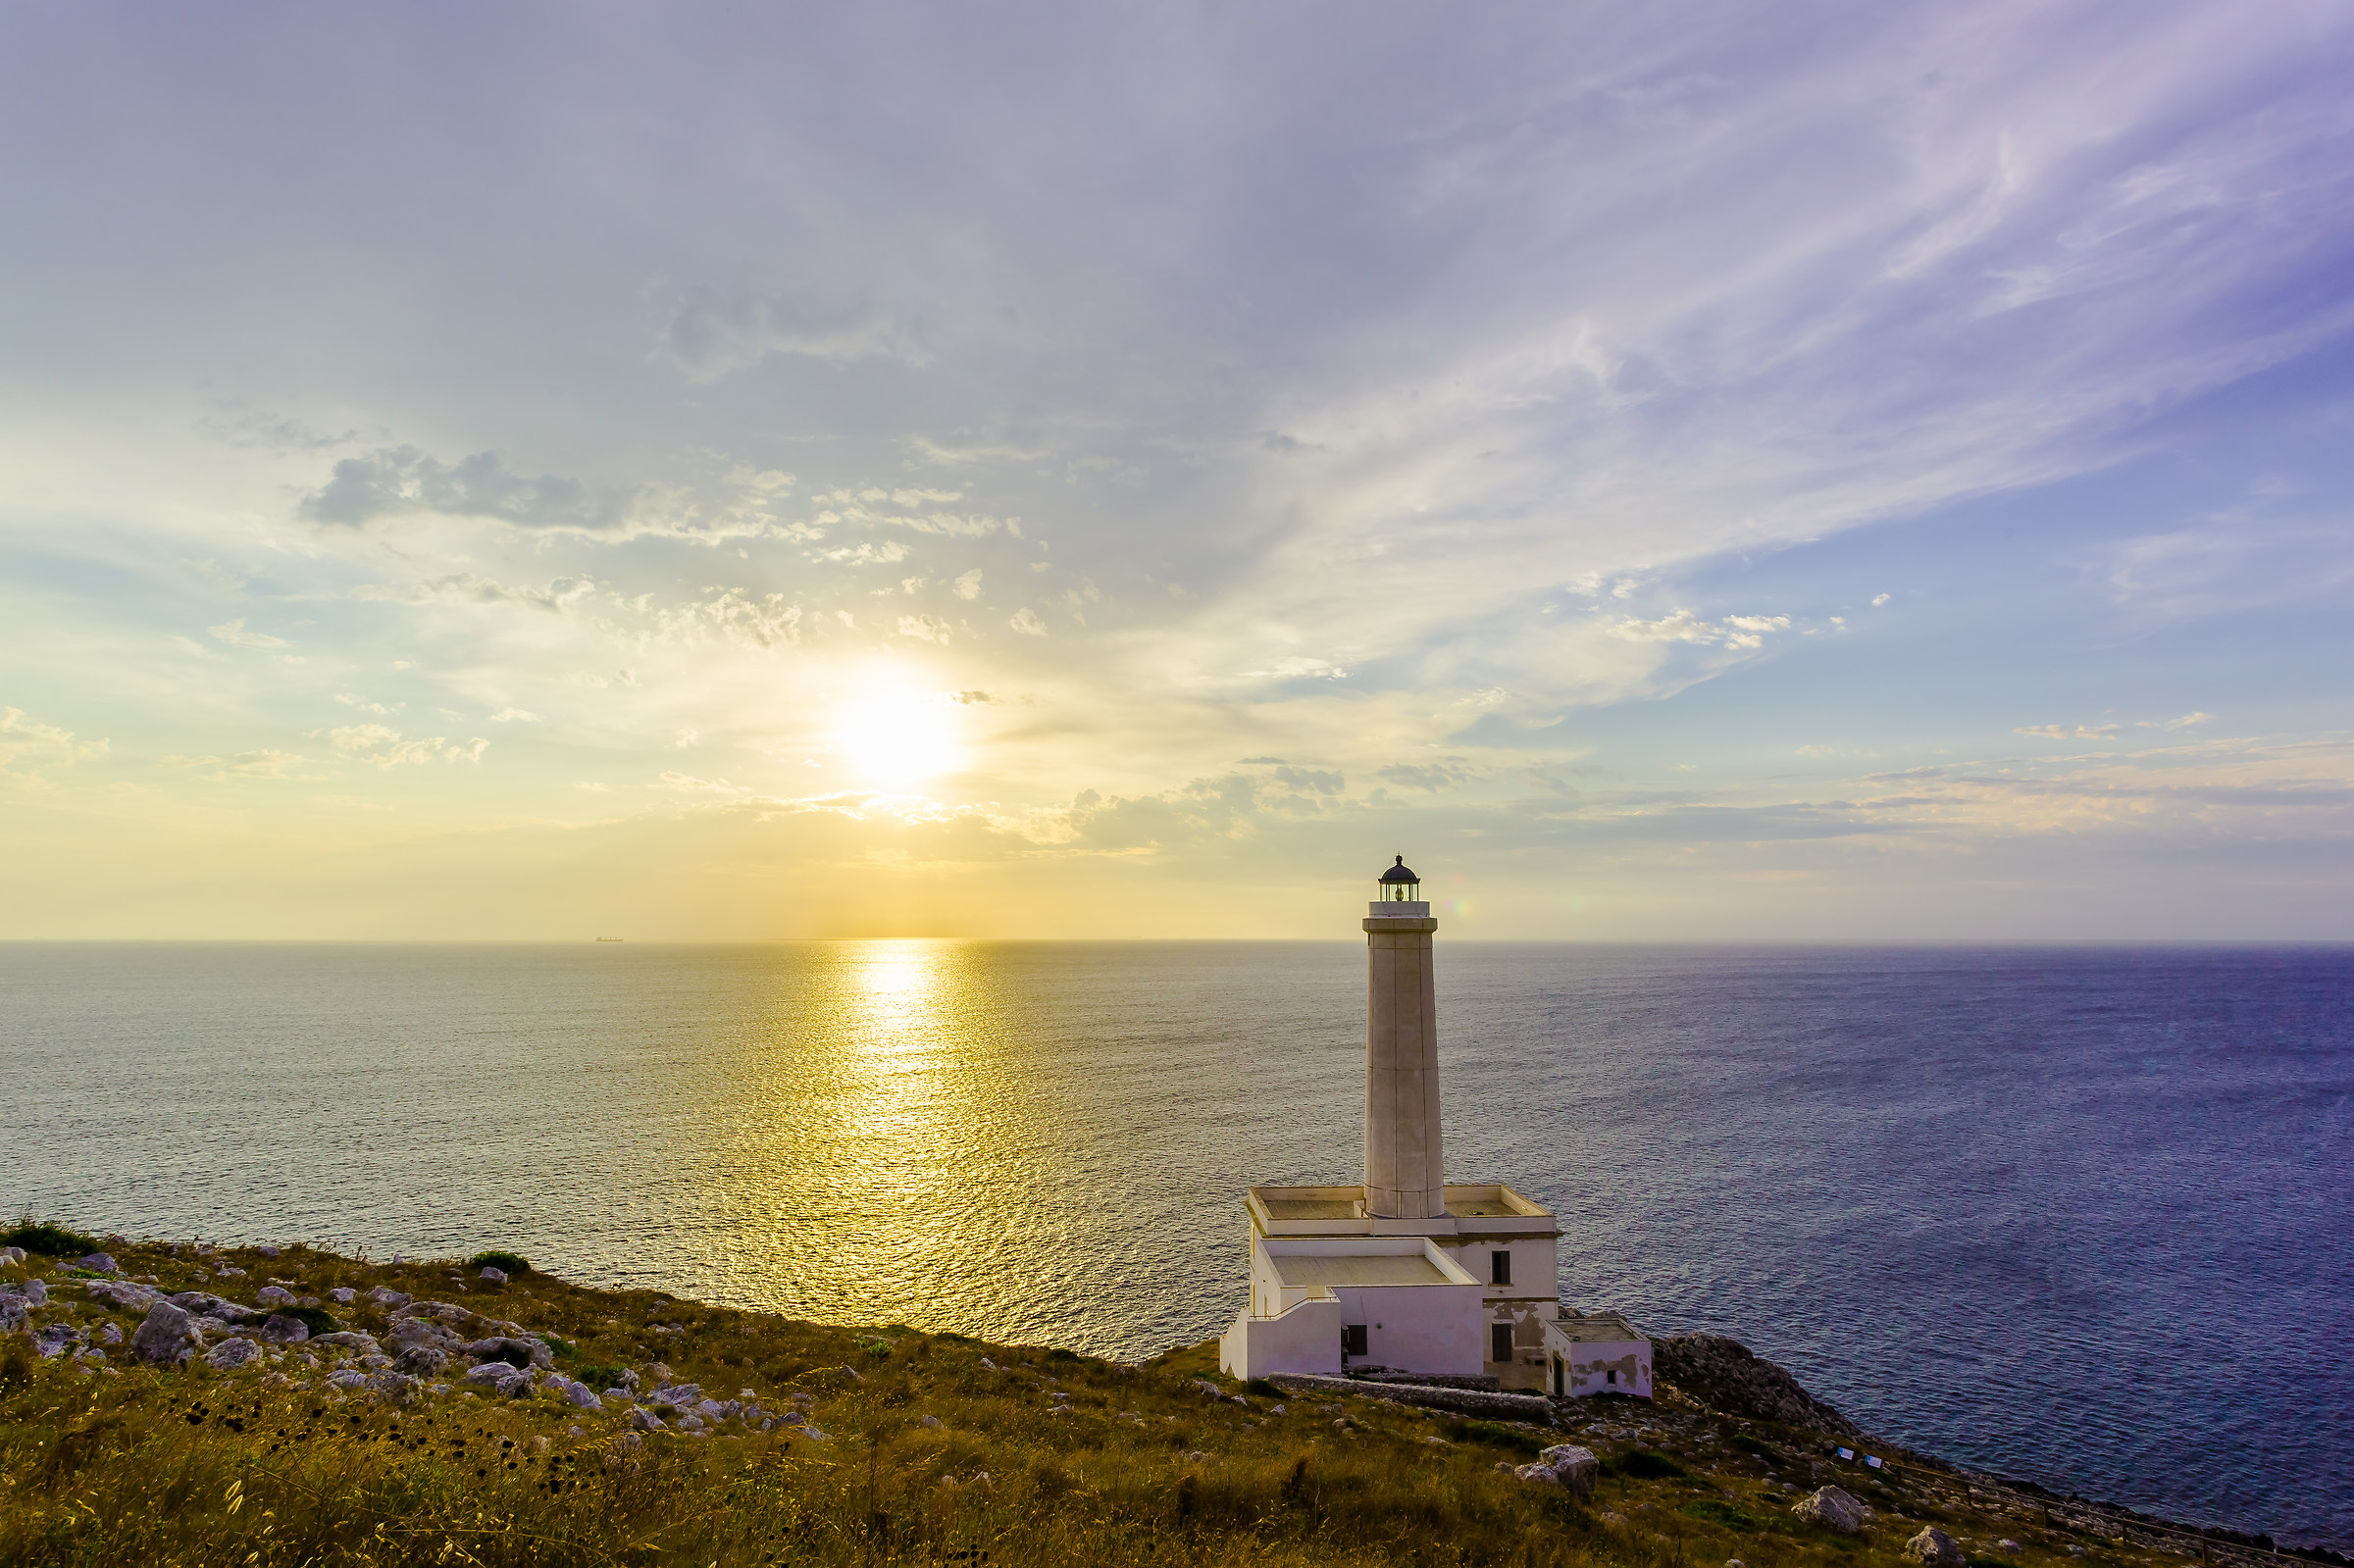 Otranto (Le) - The Lighthouse of Palascia...